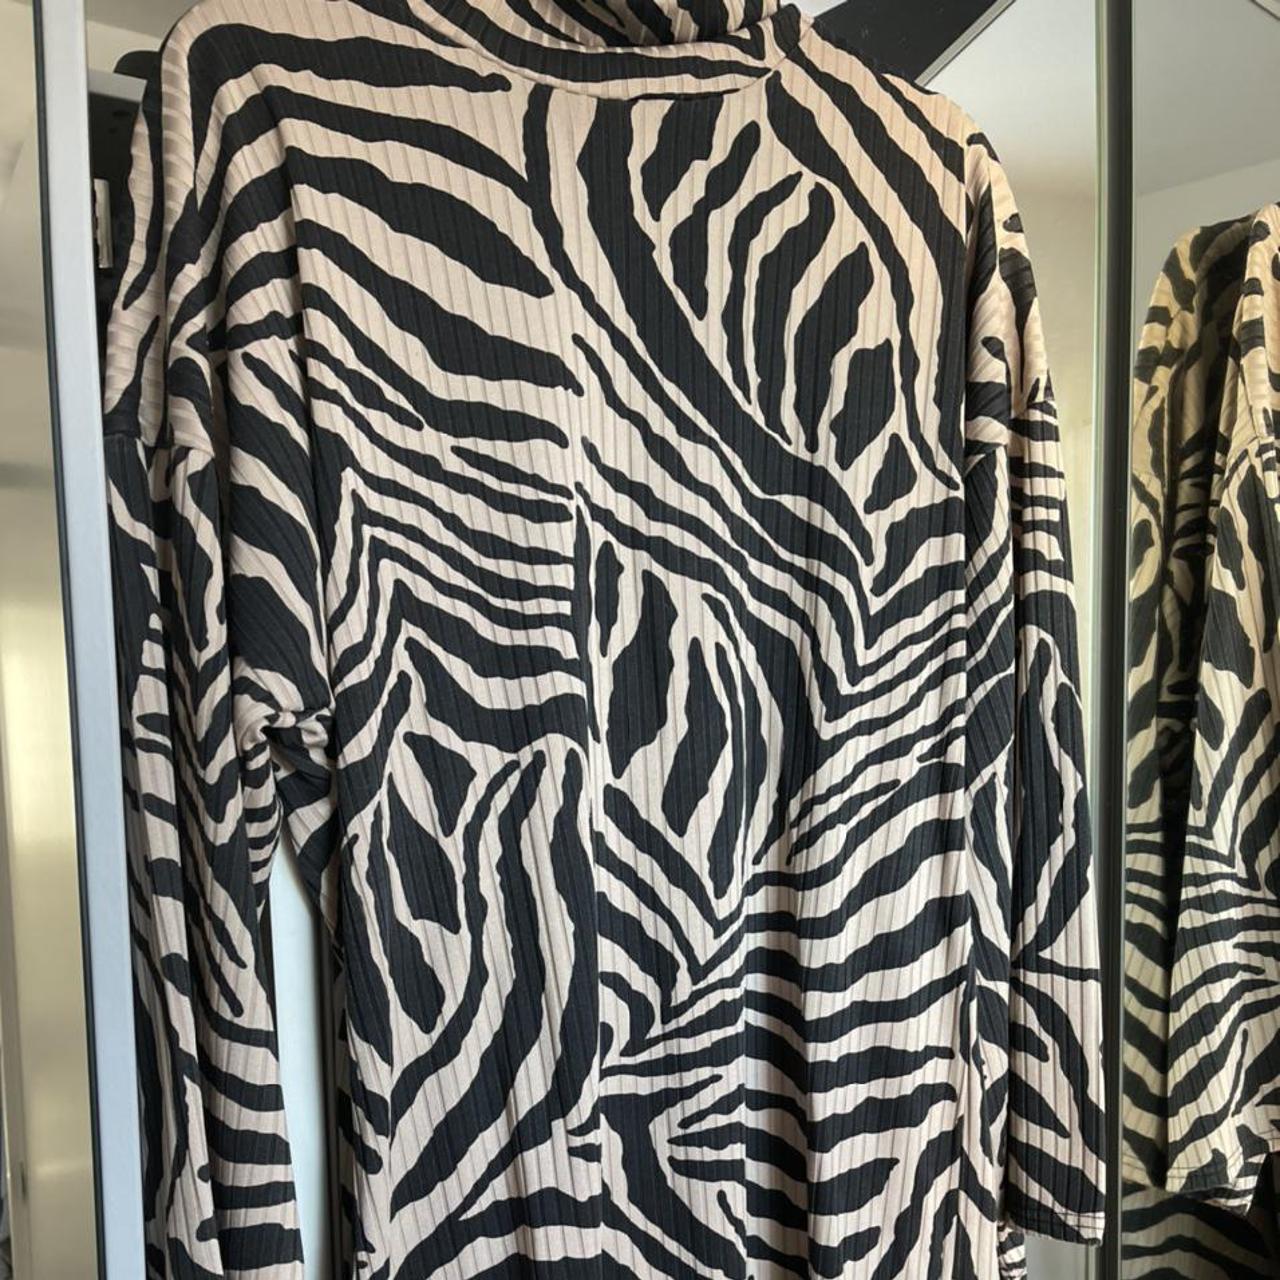 Beige and Black Zebra Print Dress - Wide Sleeves... - Depop